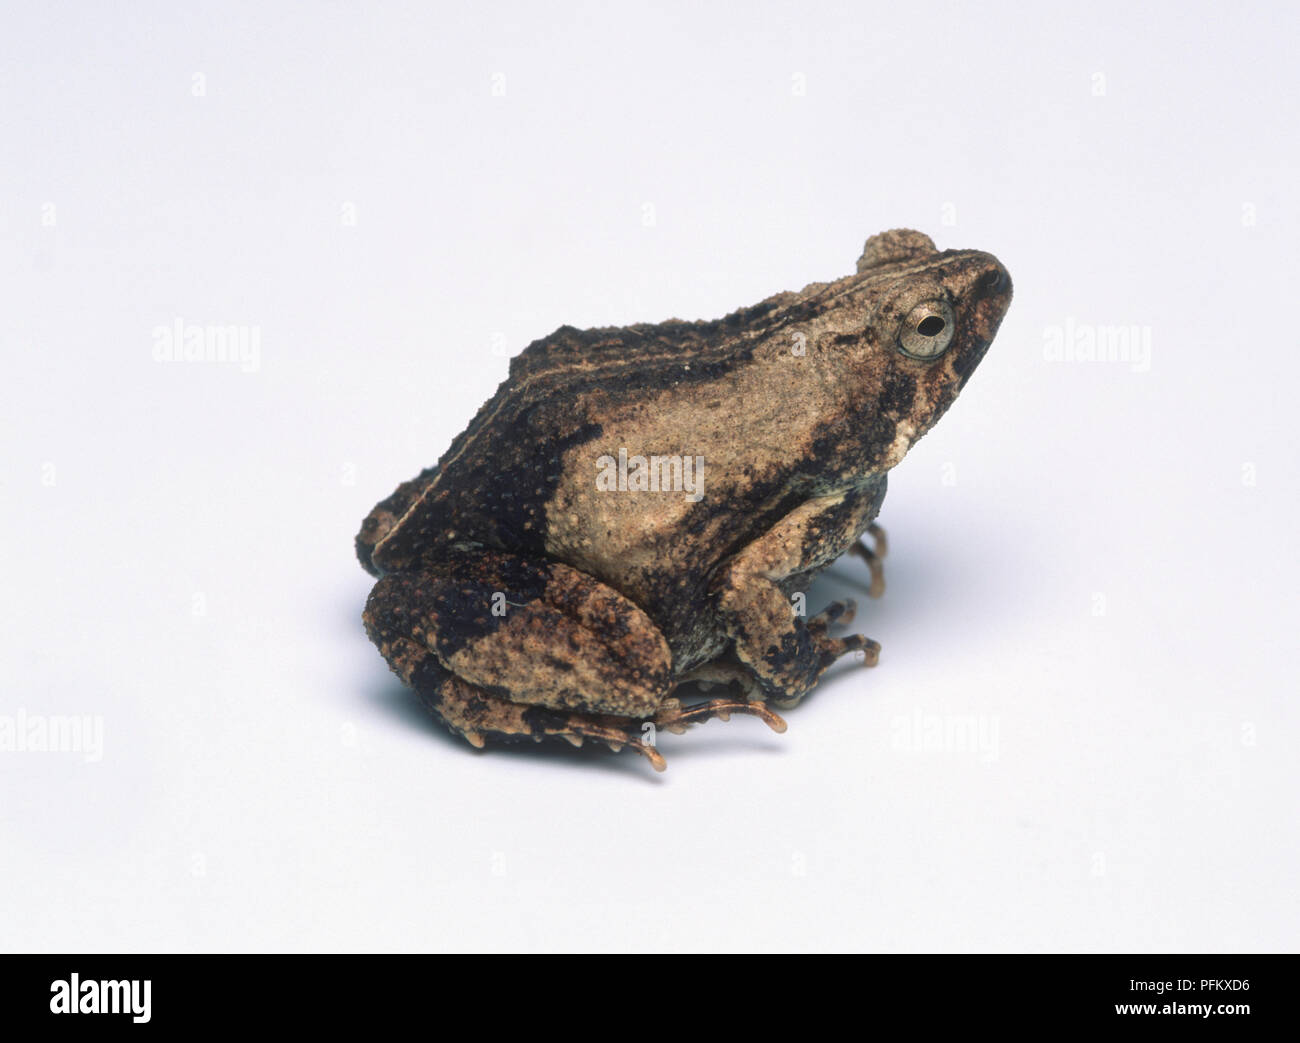 Tungara frog (Physalaemus pustulosus), side view Stock Photo